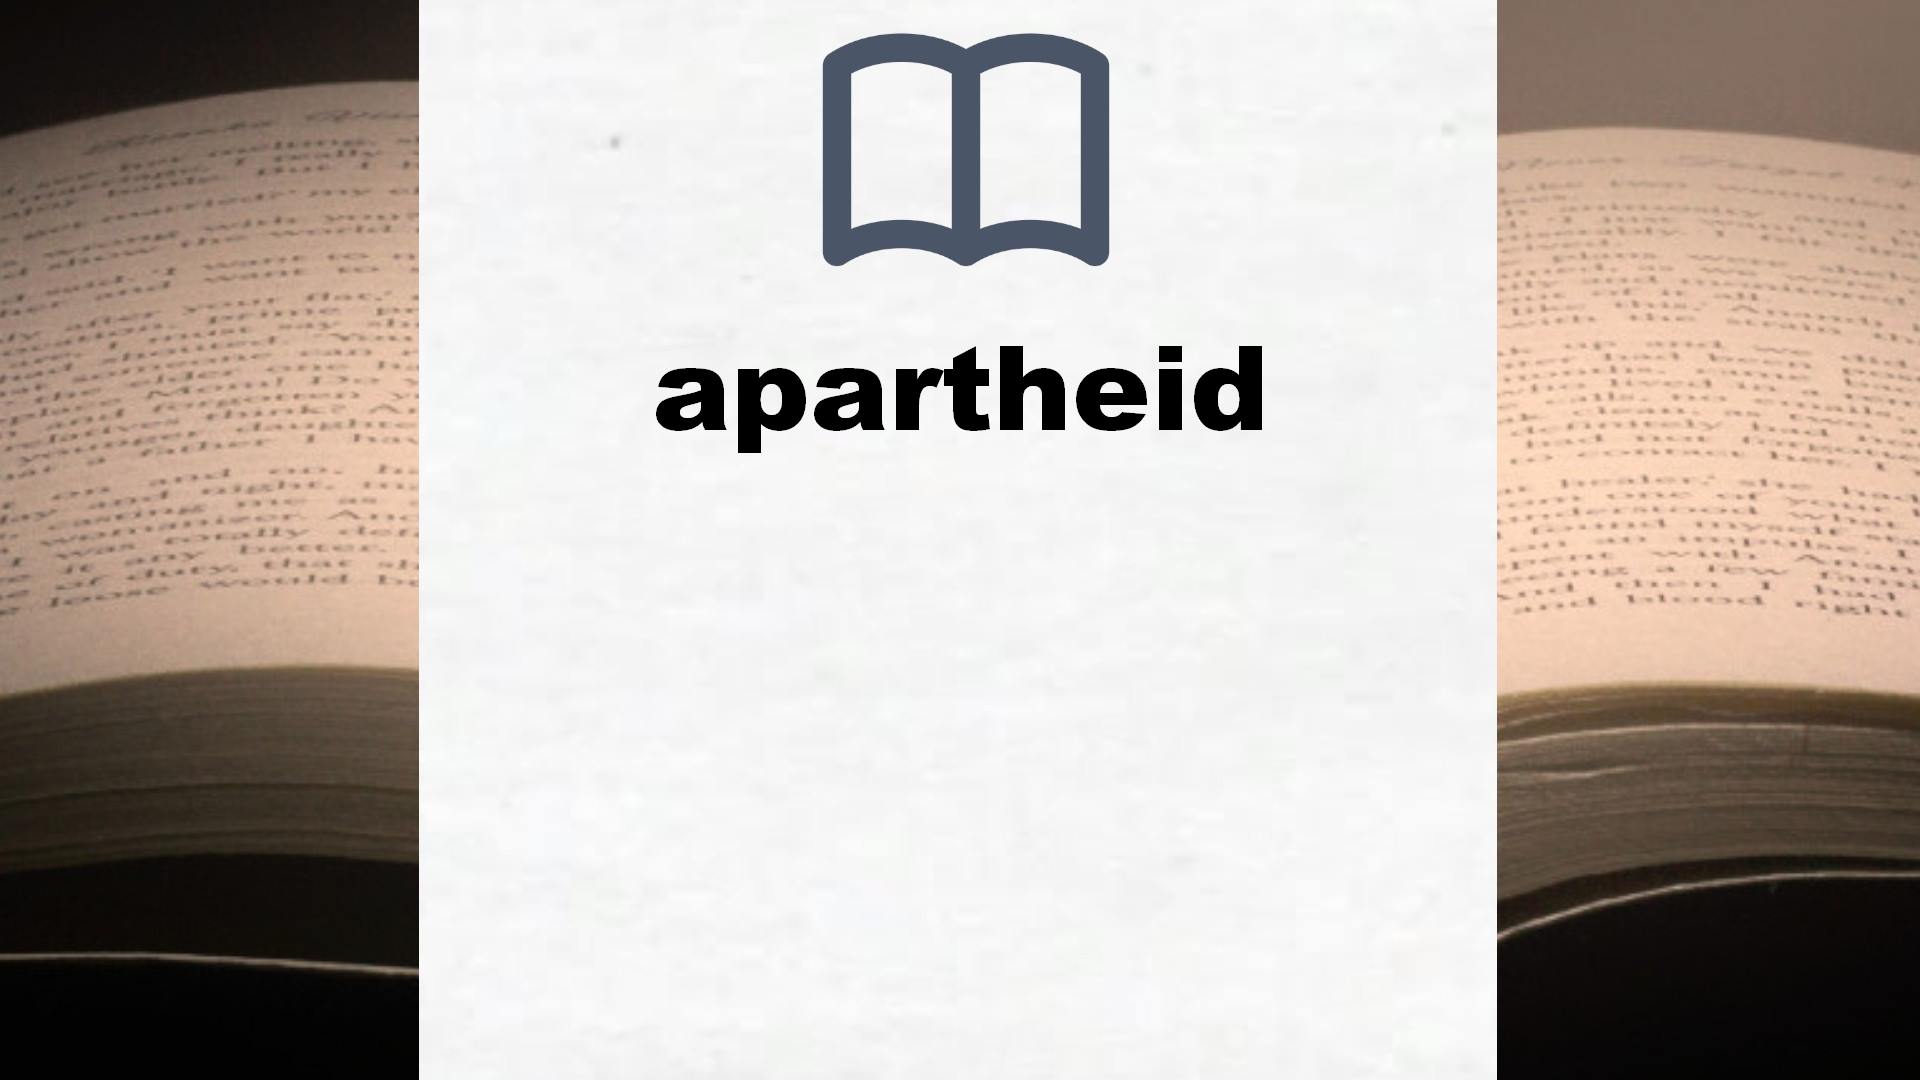 Libros sobre apartheid